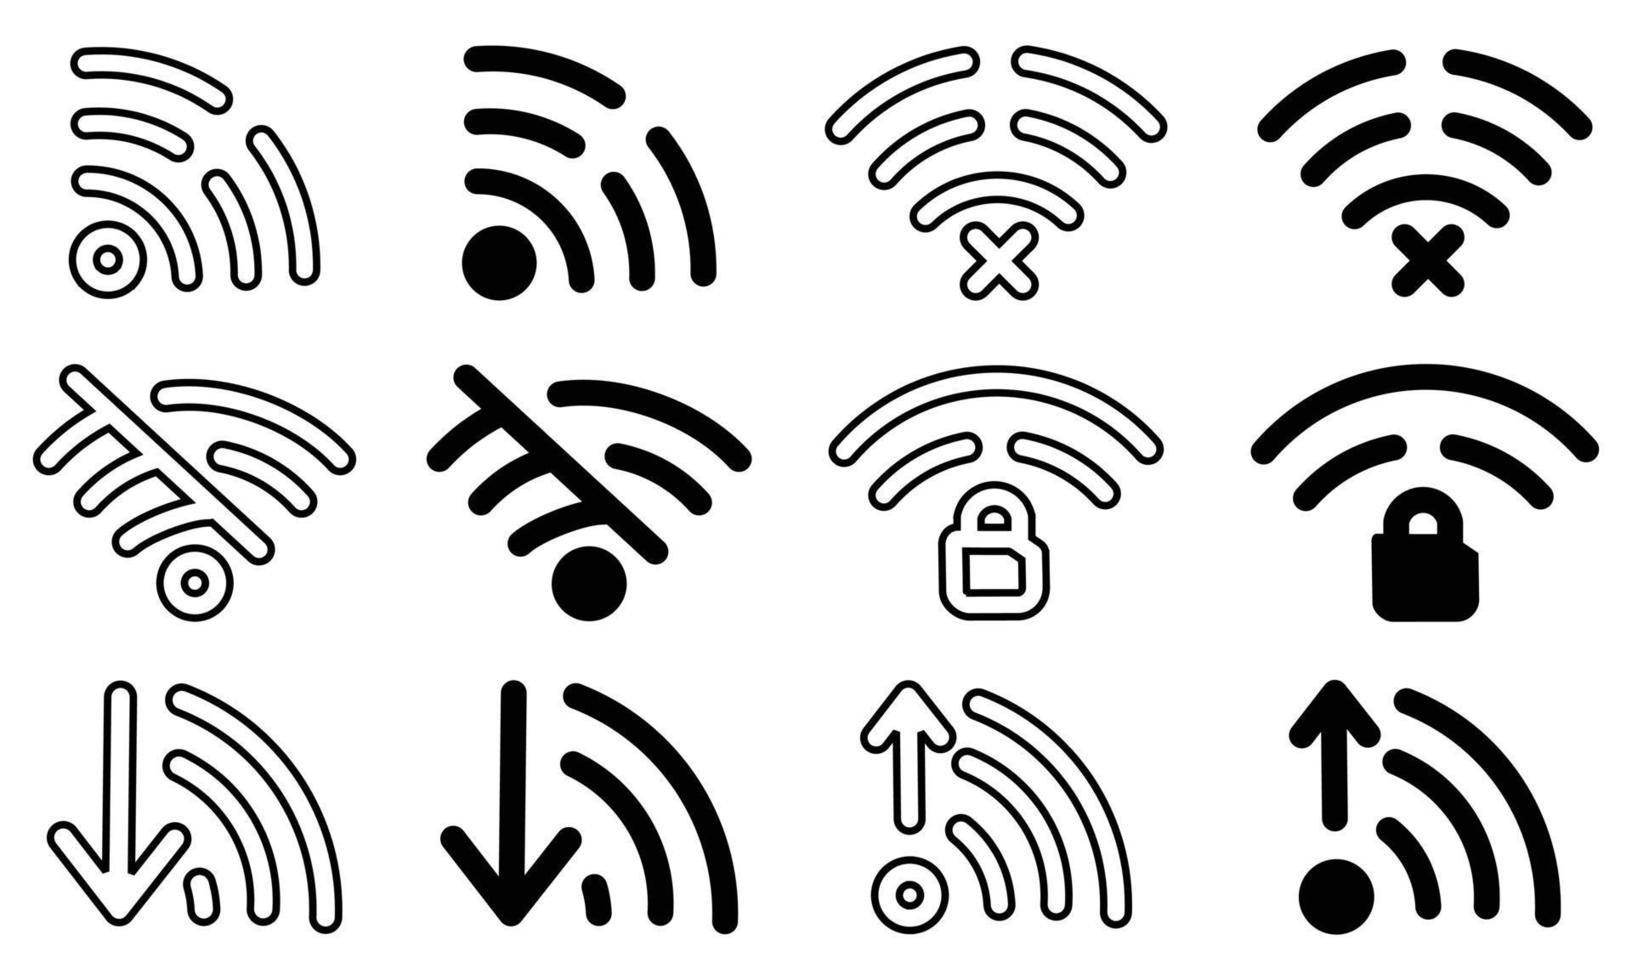 Wi-Fi-Set-Icons flach und Wireless-Verbindung Äther, eine Reihe von verschiedenen Wireless- und Wifi-Icons für das Design vektor